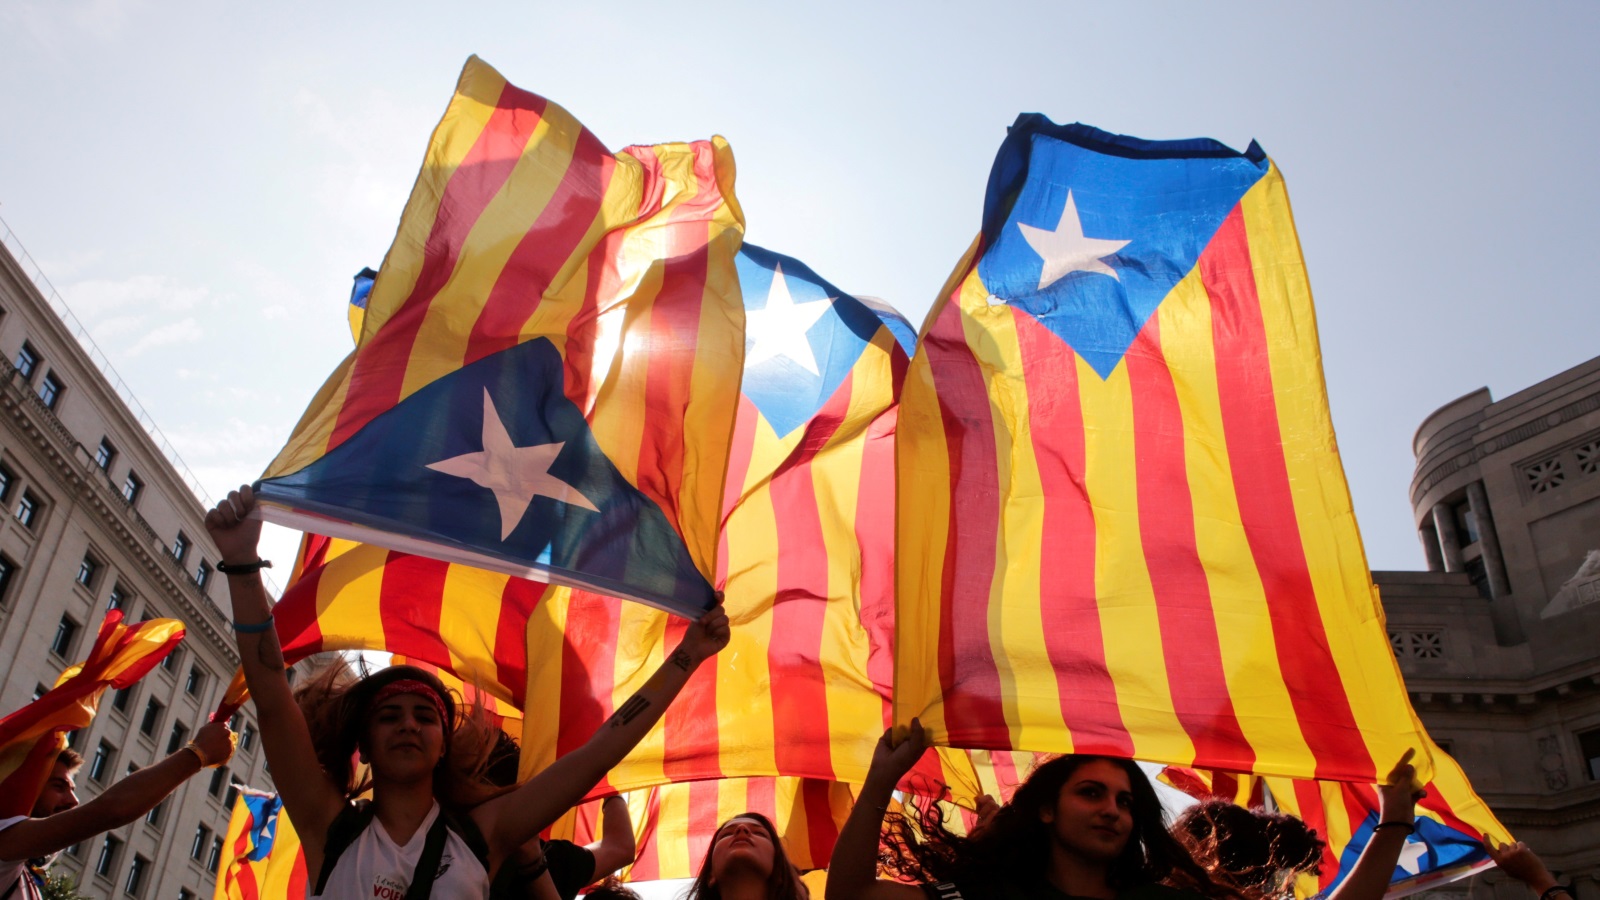 ‪رفع أعلام كتالونيا في برشلونة ضمن الاحتفال بنتيجة الاستفتاء‬ رفع أعلام كتالونيا في برشلونة ضمن الاحتفال بنتيجة الاستفتاء (رويترز)